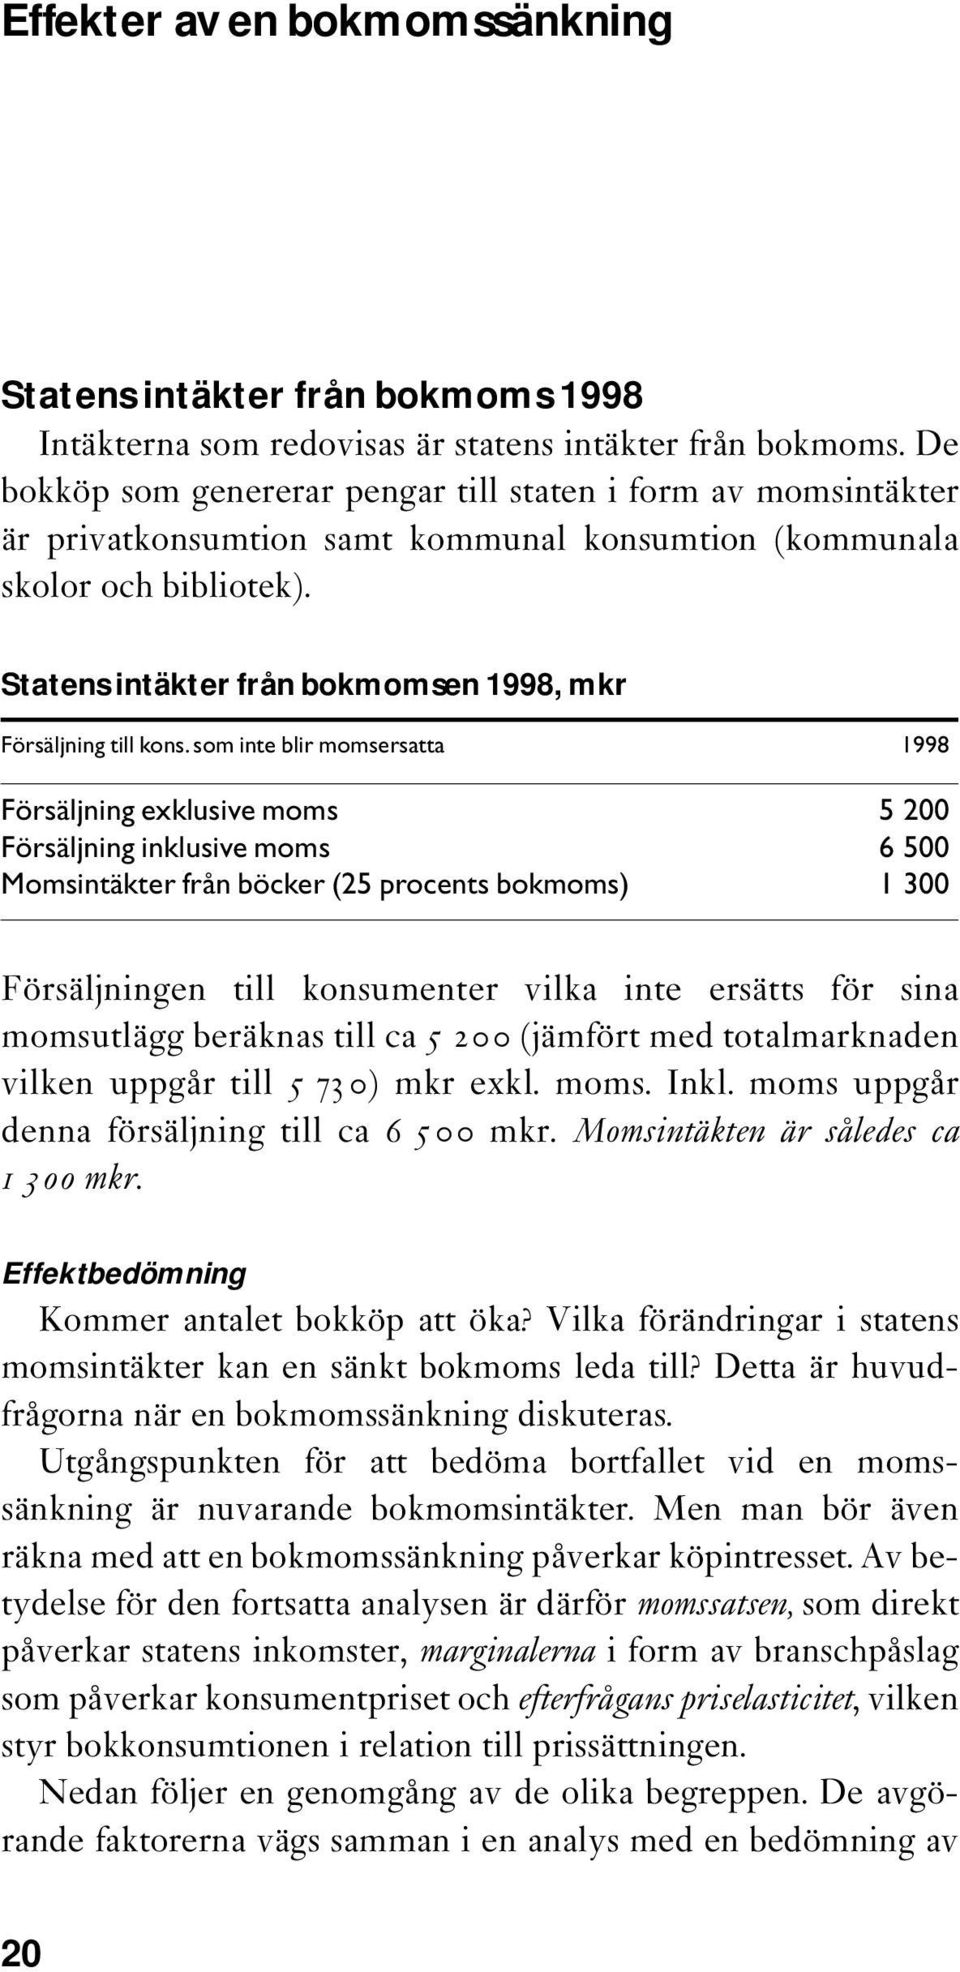 Statens intäkter från bokmomsen 1998, mkr Försäljning till kons.